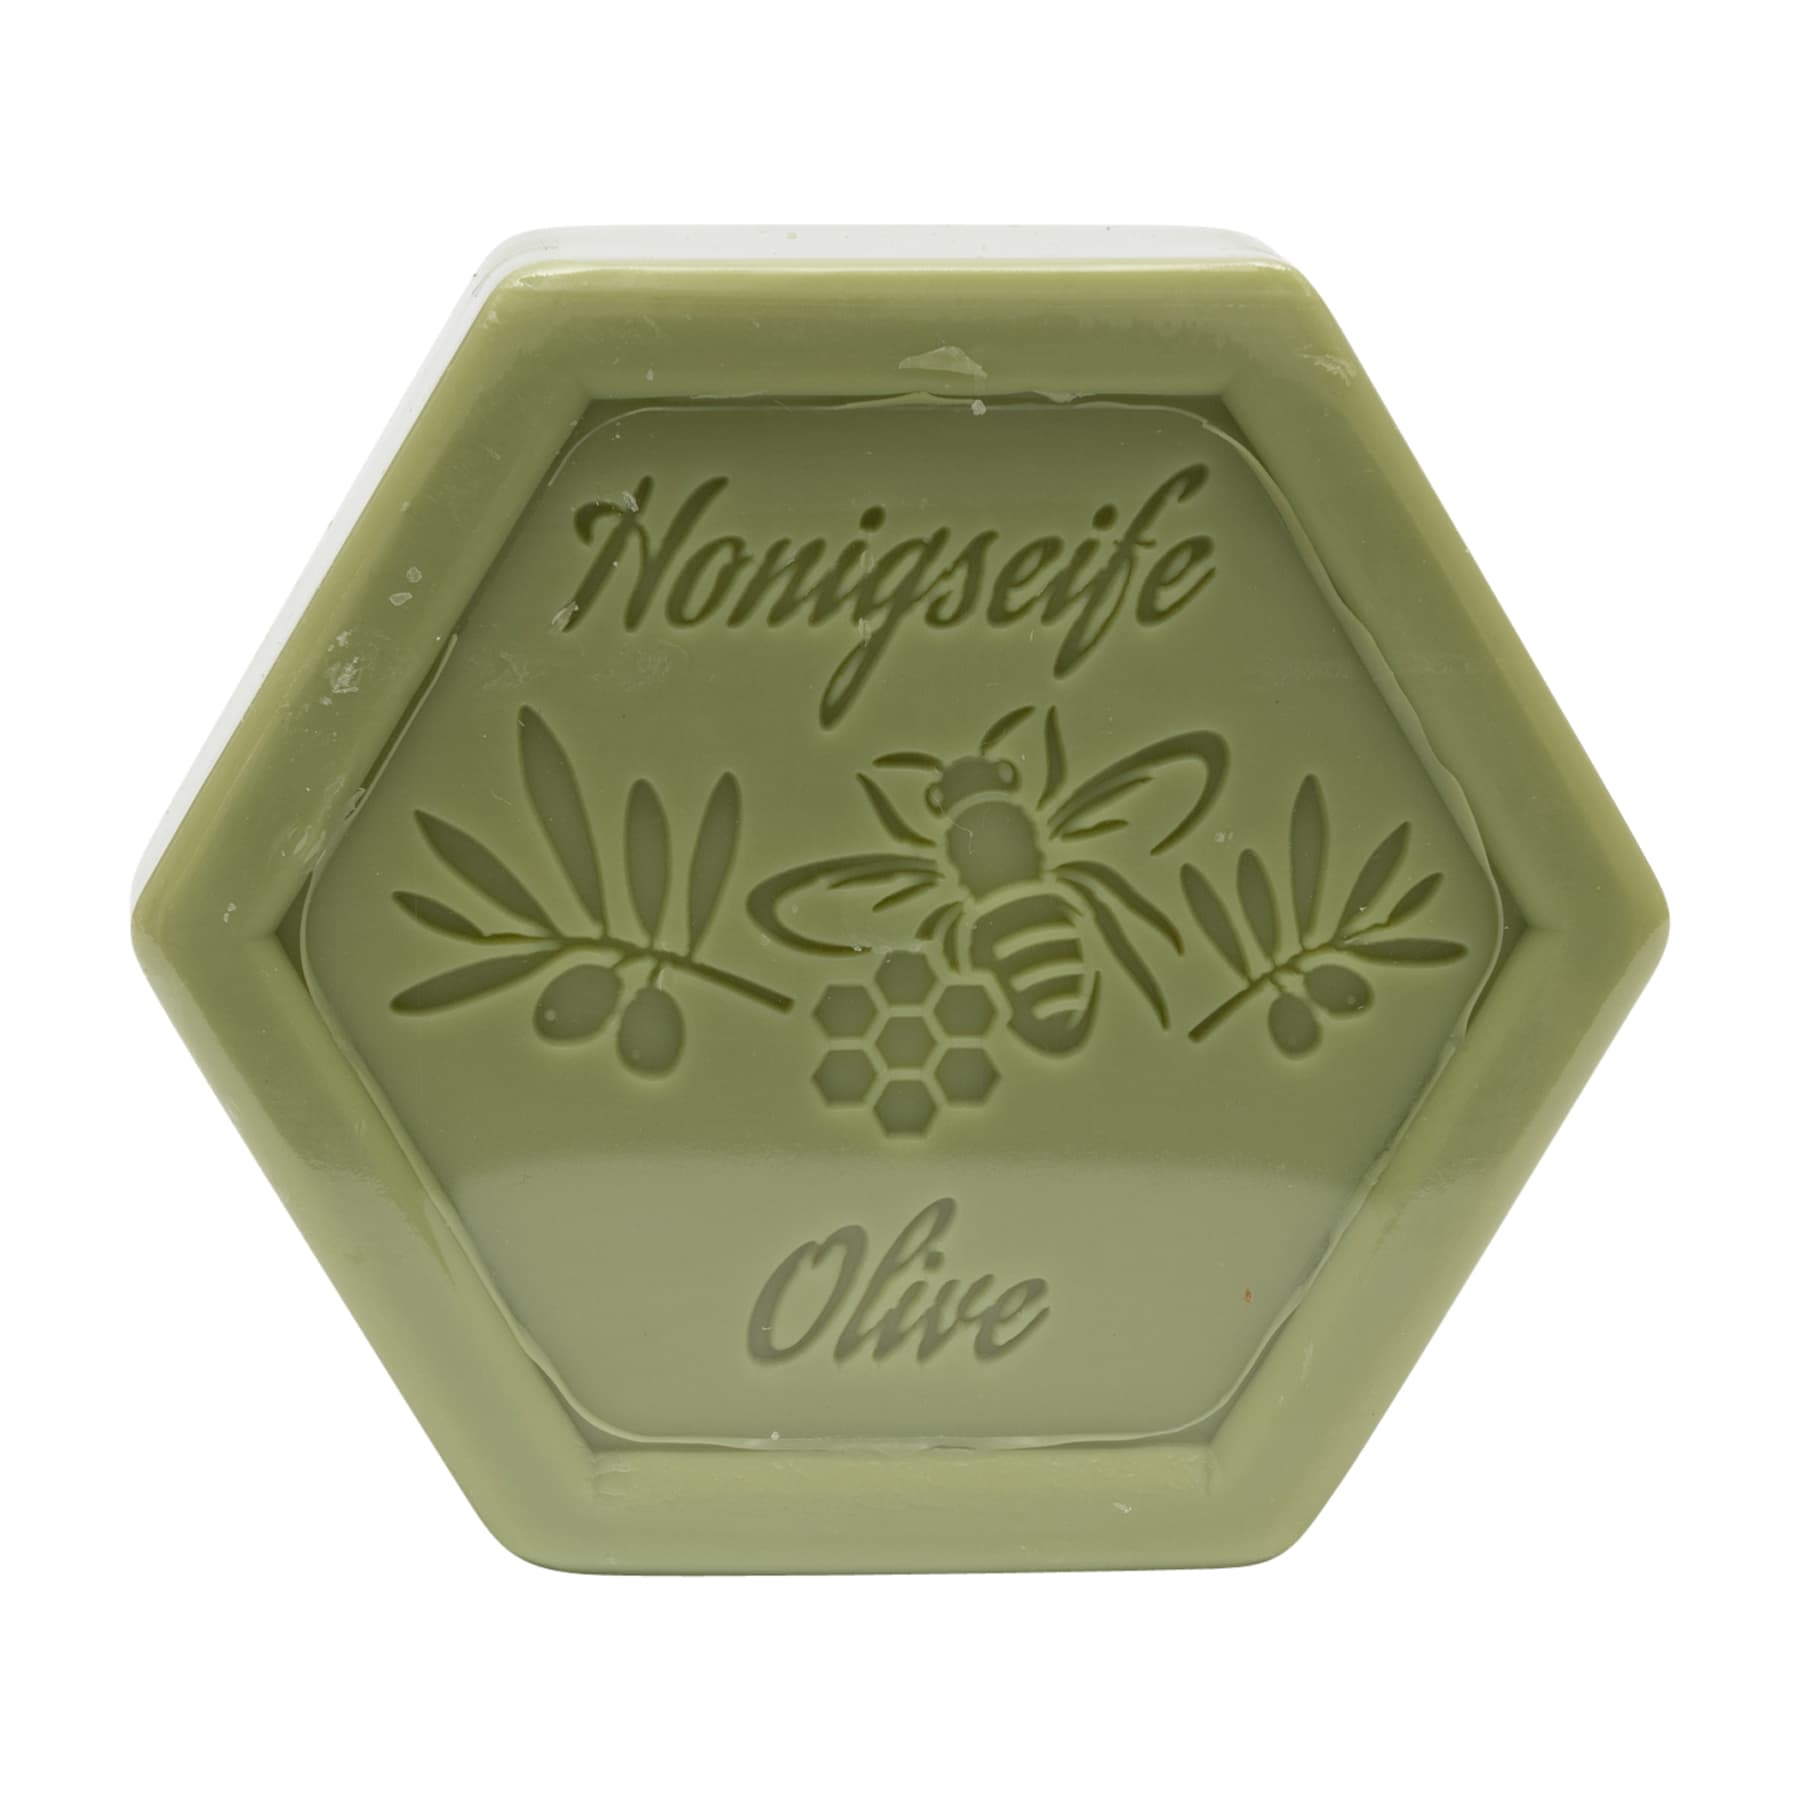 Honigseife mit Olive 100 g in Sechseckform, foliert, mit dem beigelegten Etikett